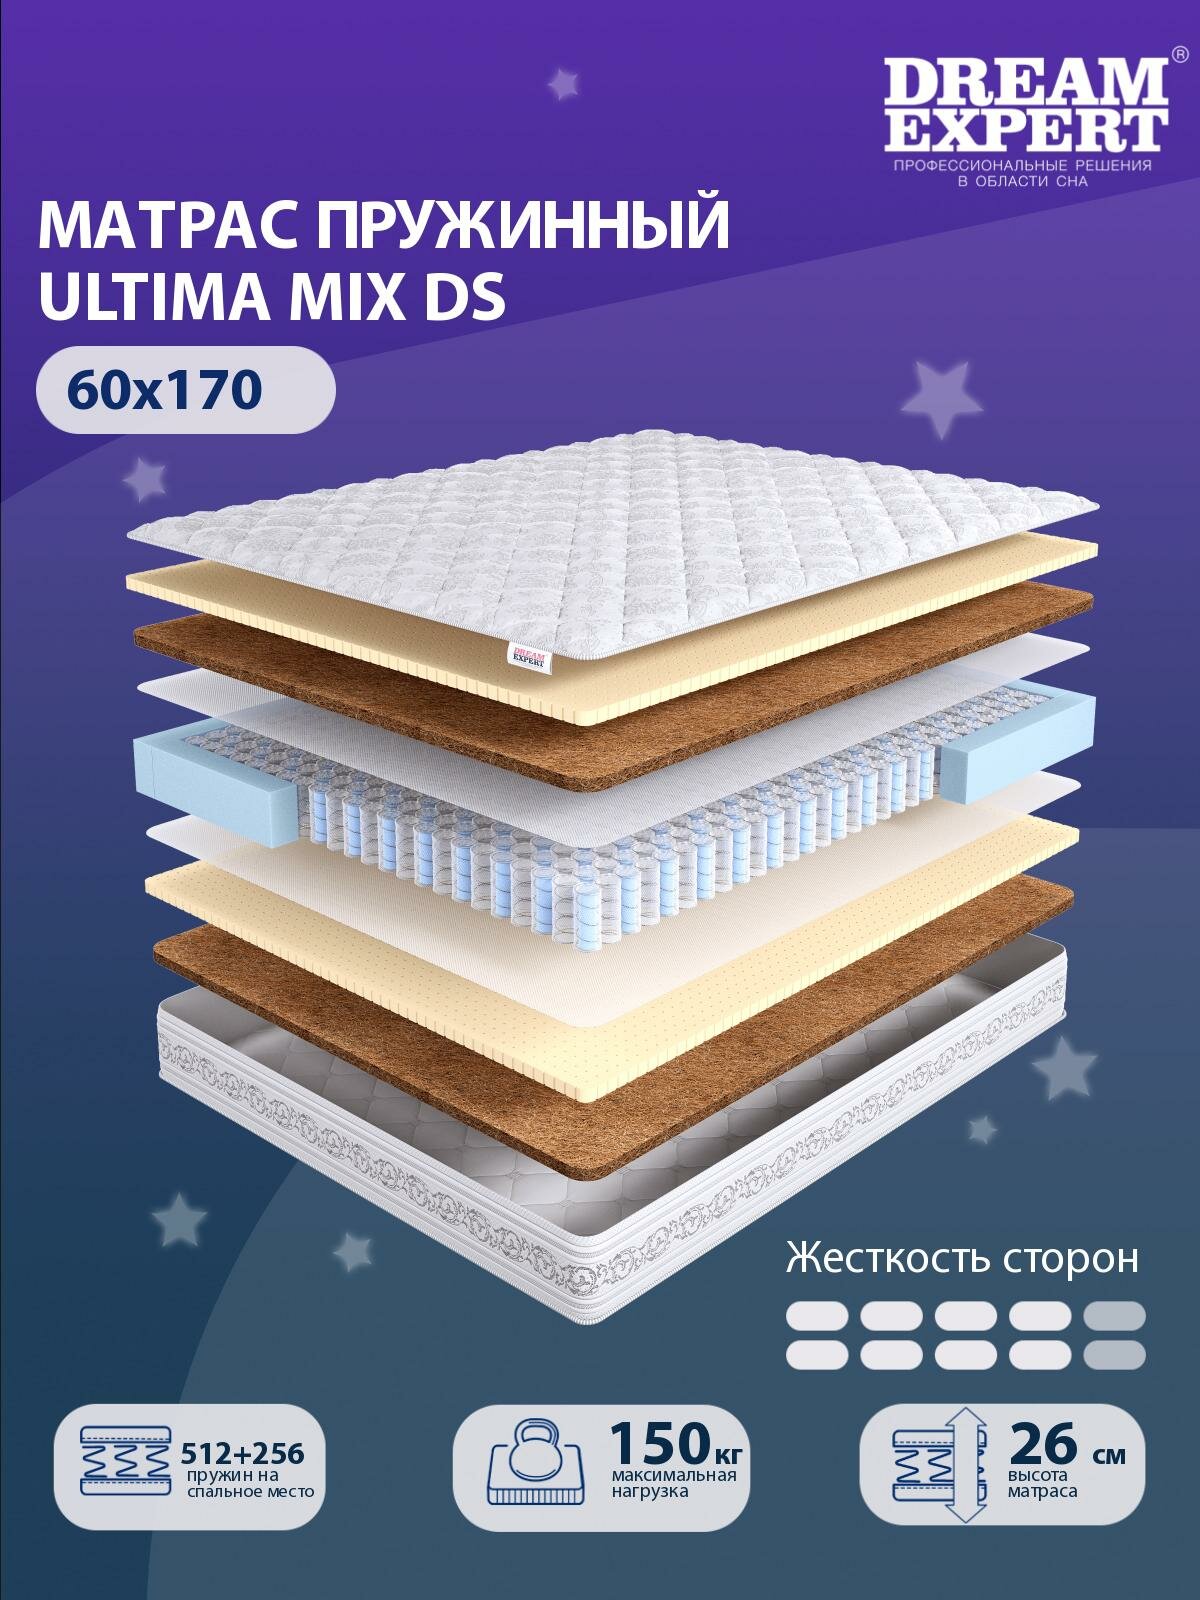 Матрас DreamExpert Ultima MIX DS выше средней жесткости, детский, независимый пружинный блок, на кровать 60x170